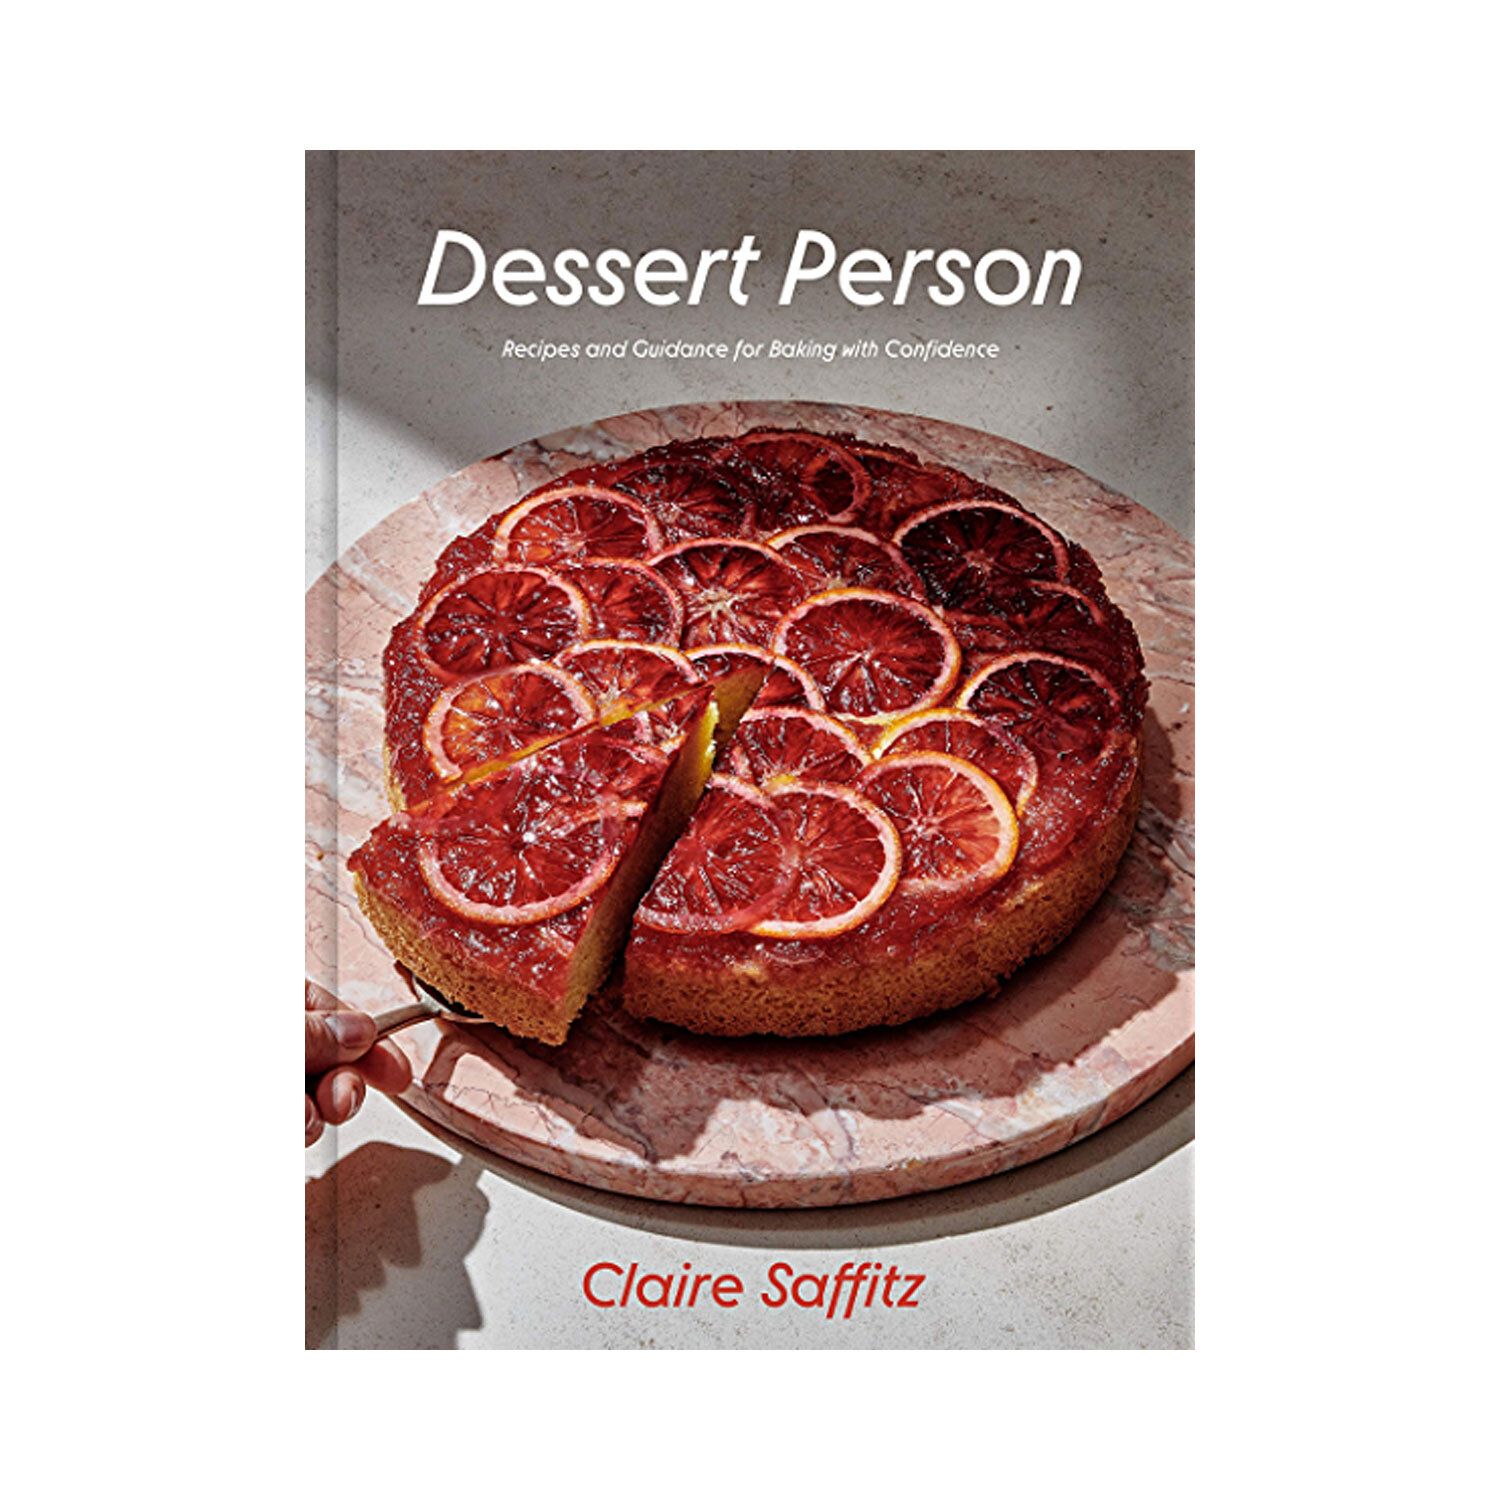 Dessert Person by Claire Saffitz